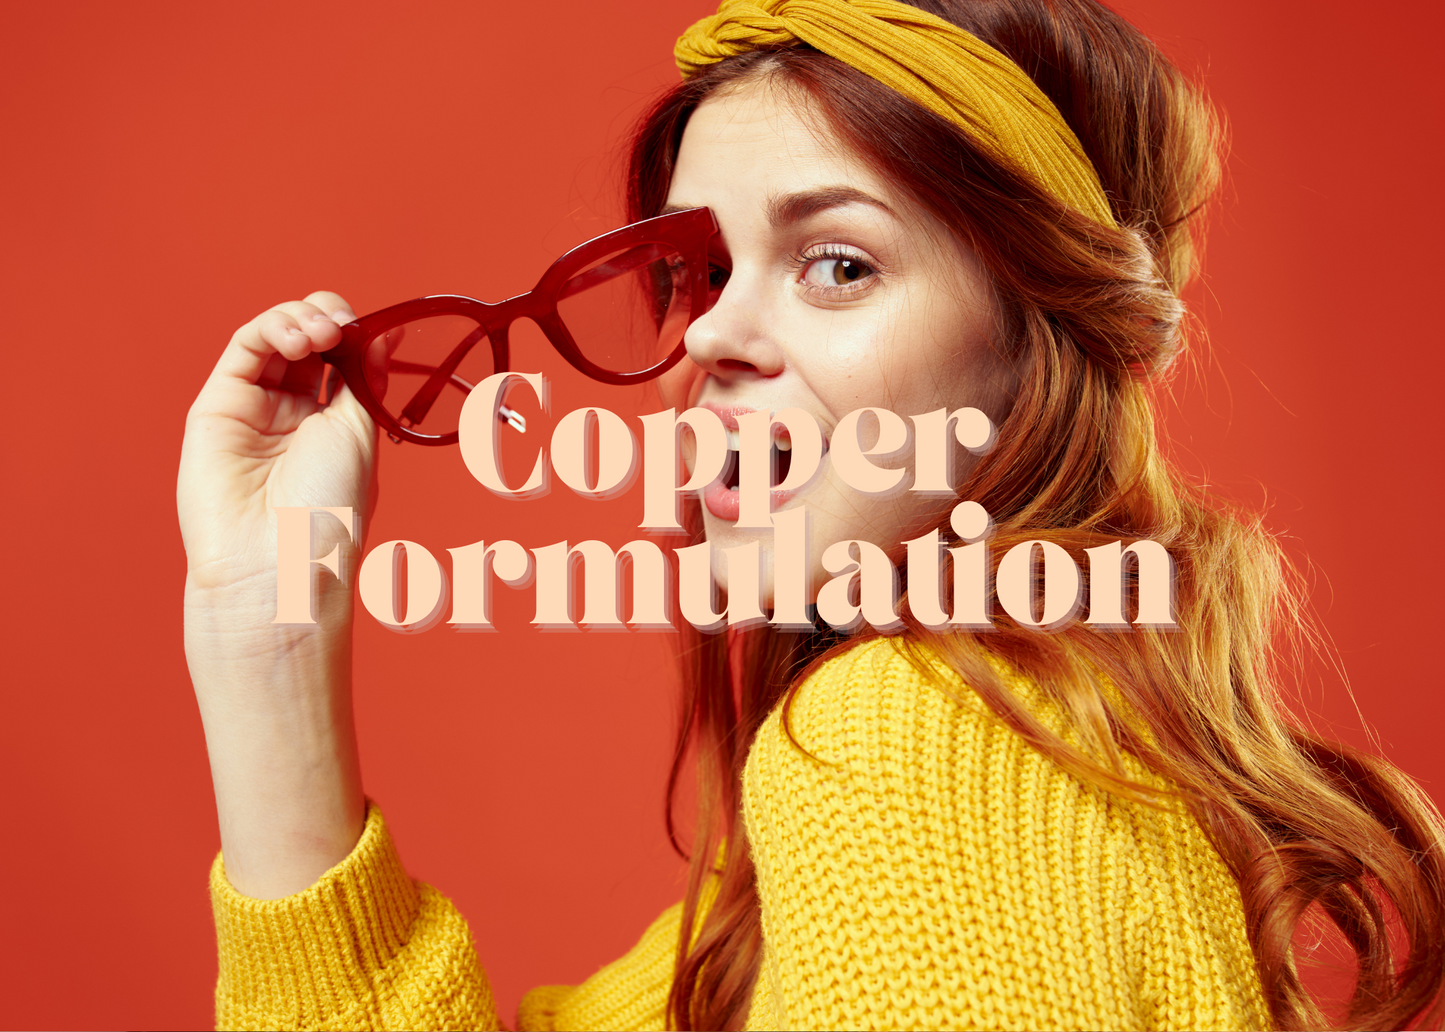 Copper Formulation